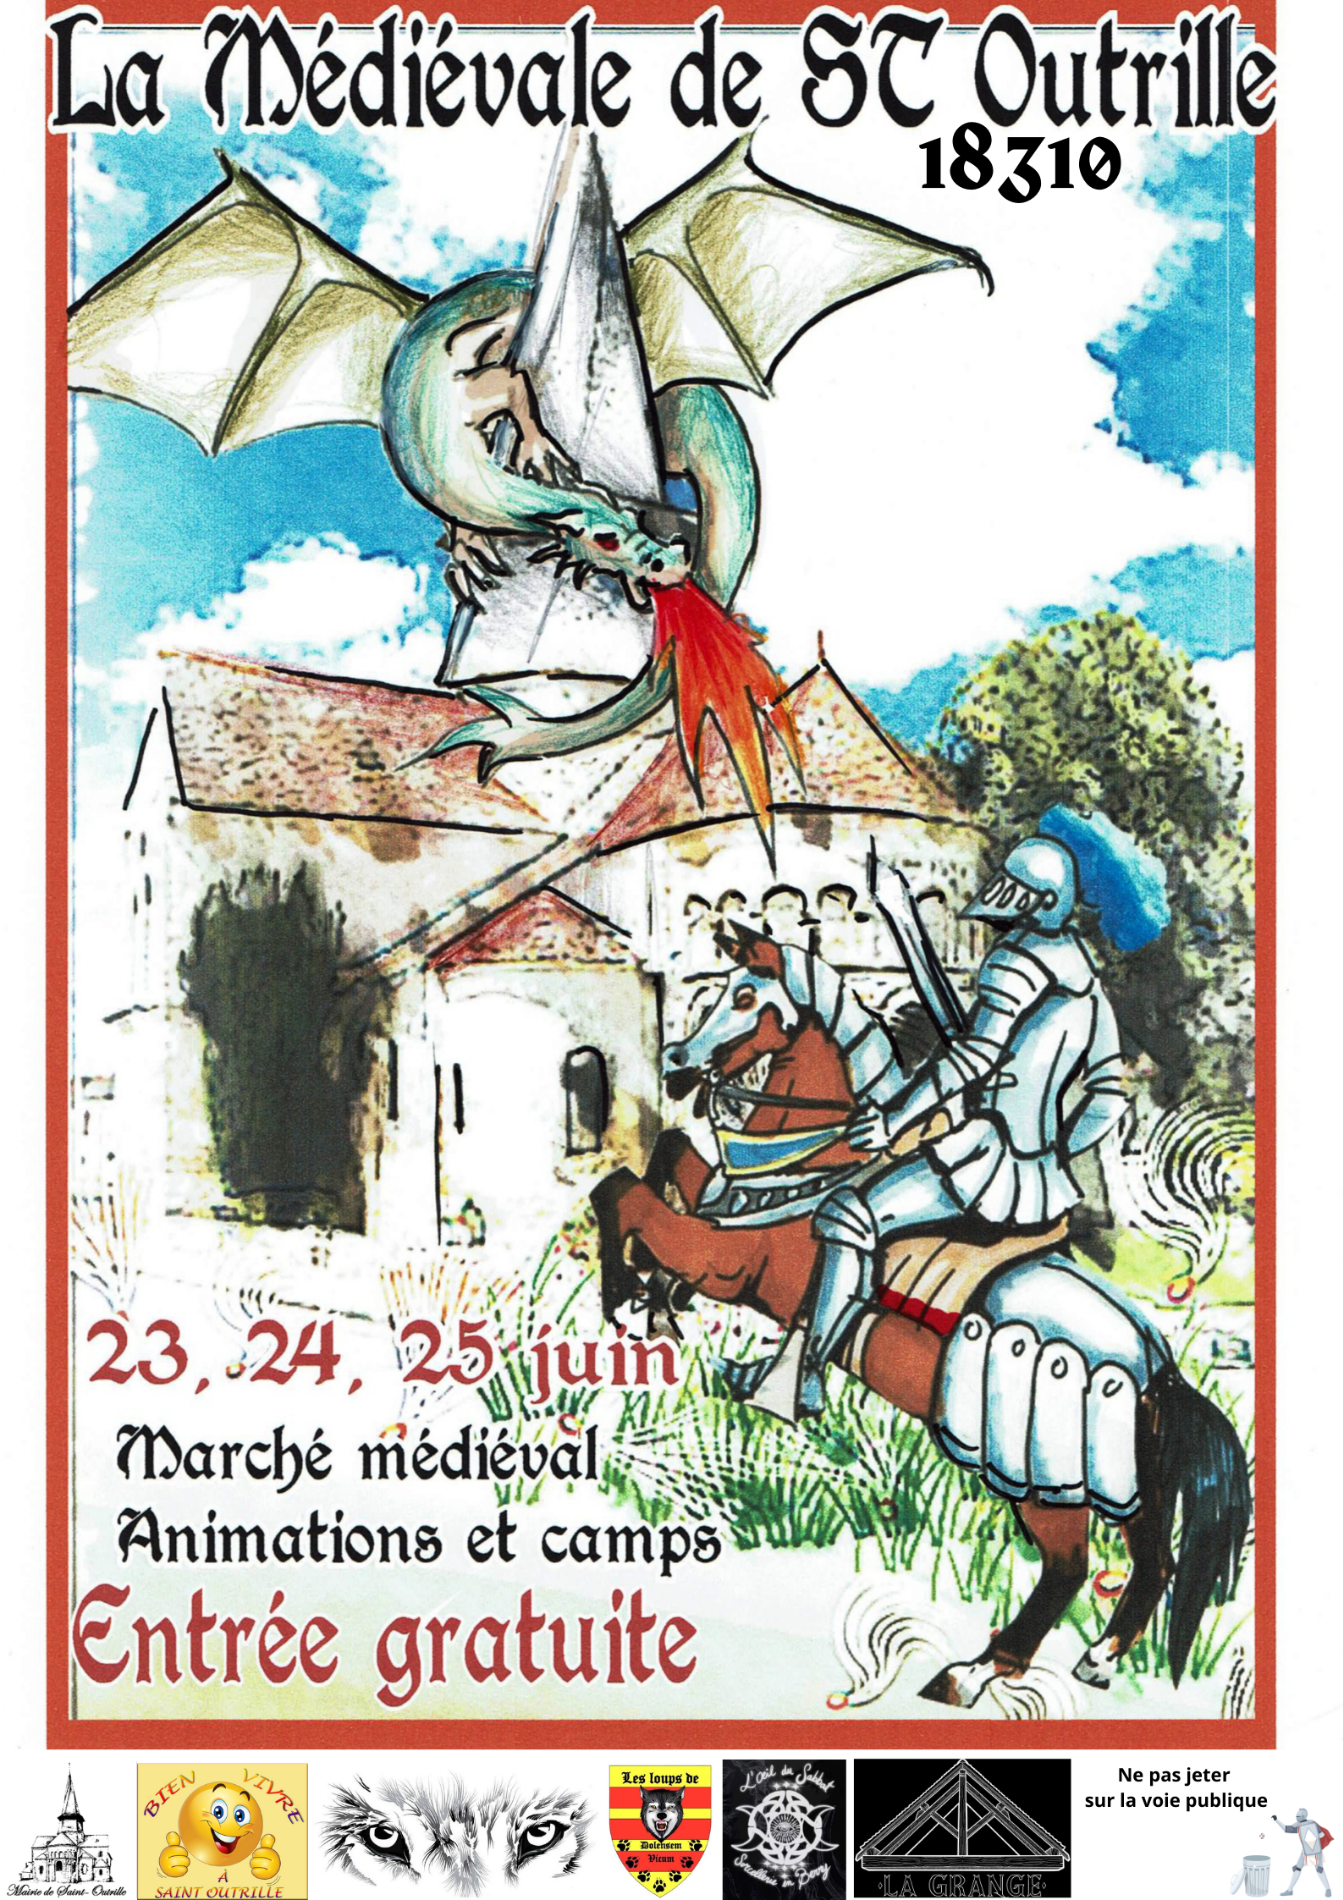 Première fête médiévale de St Outrille